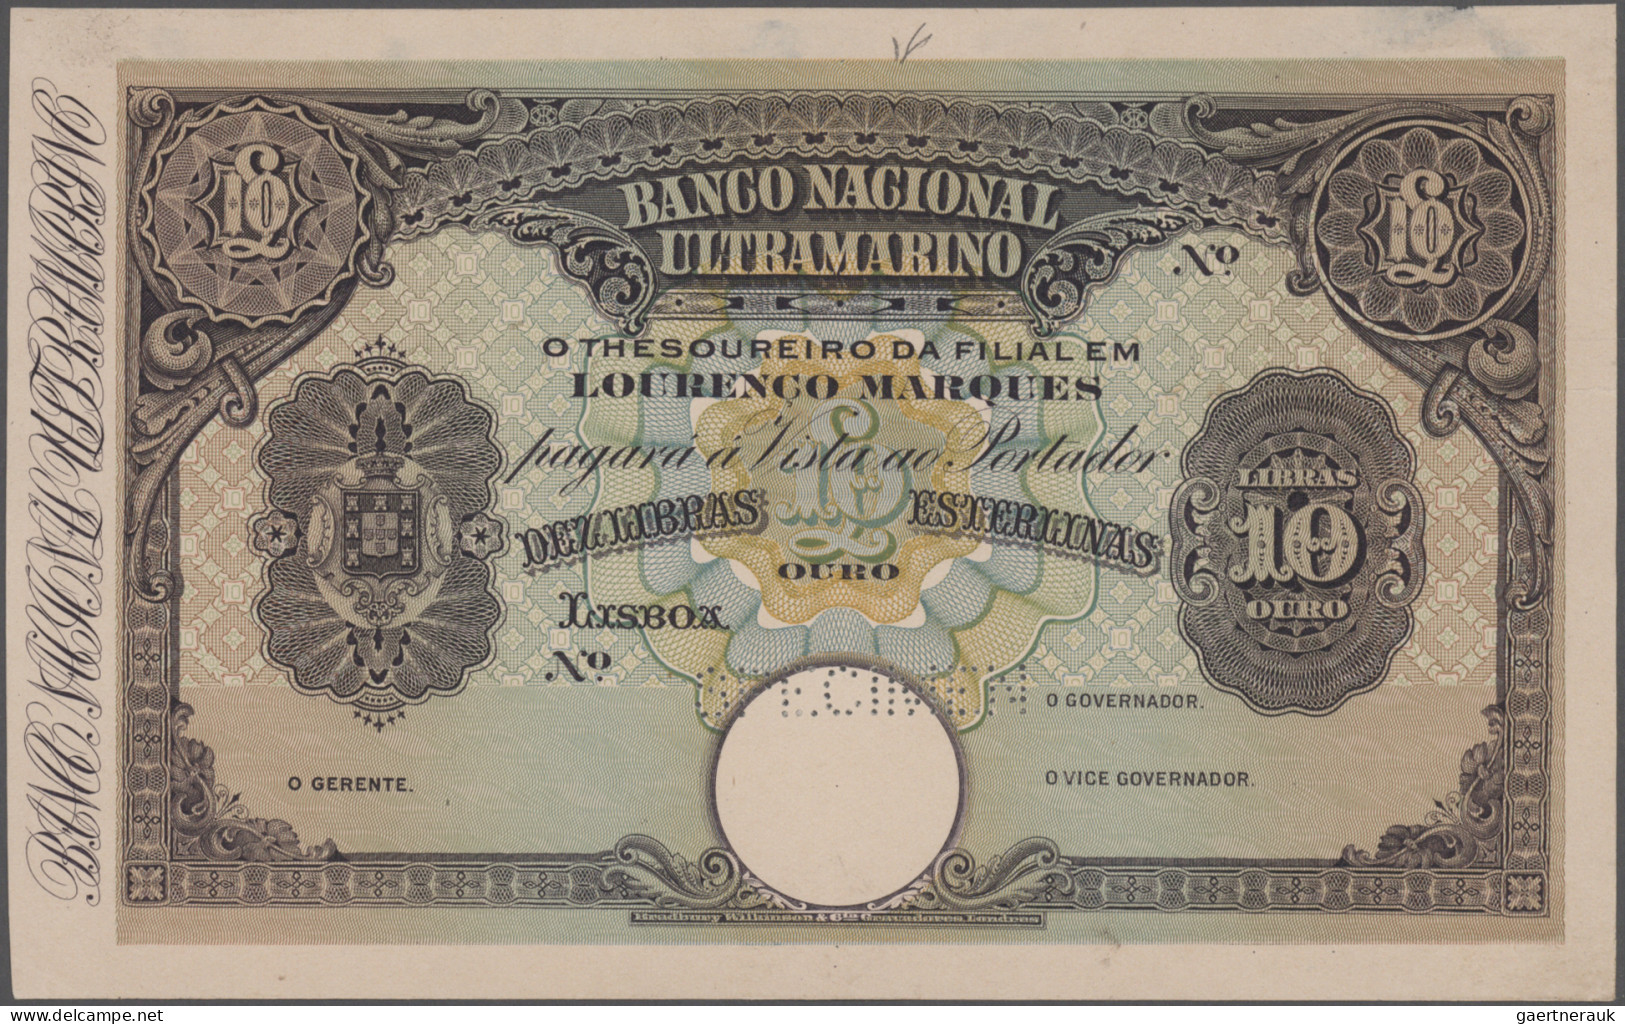 Mozambique: Banco Nacional Ultramarino - LOURENCO MARQUES, 10 Libras Esterlinas - Mozambique